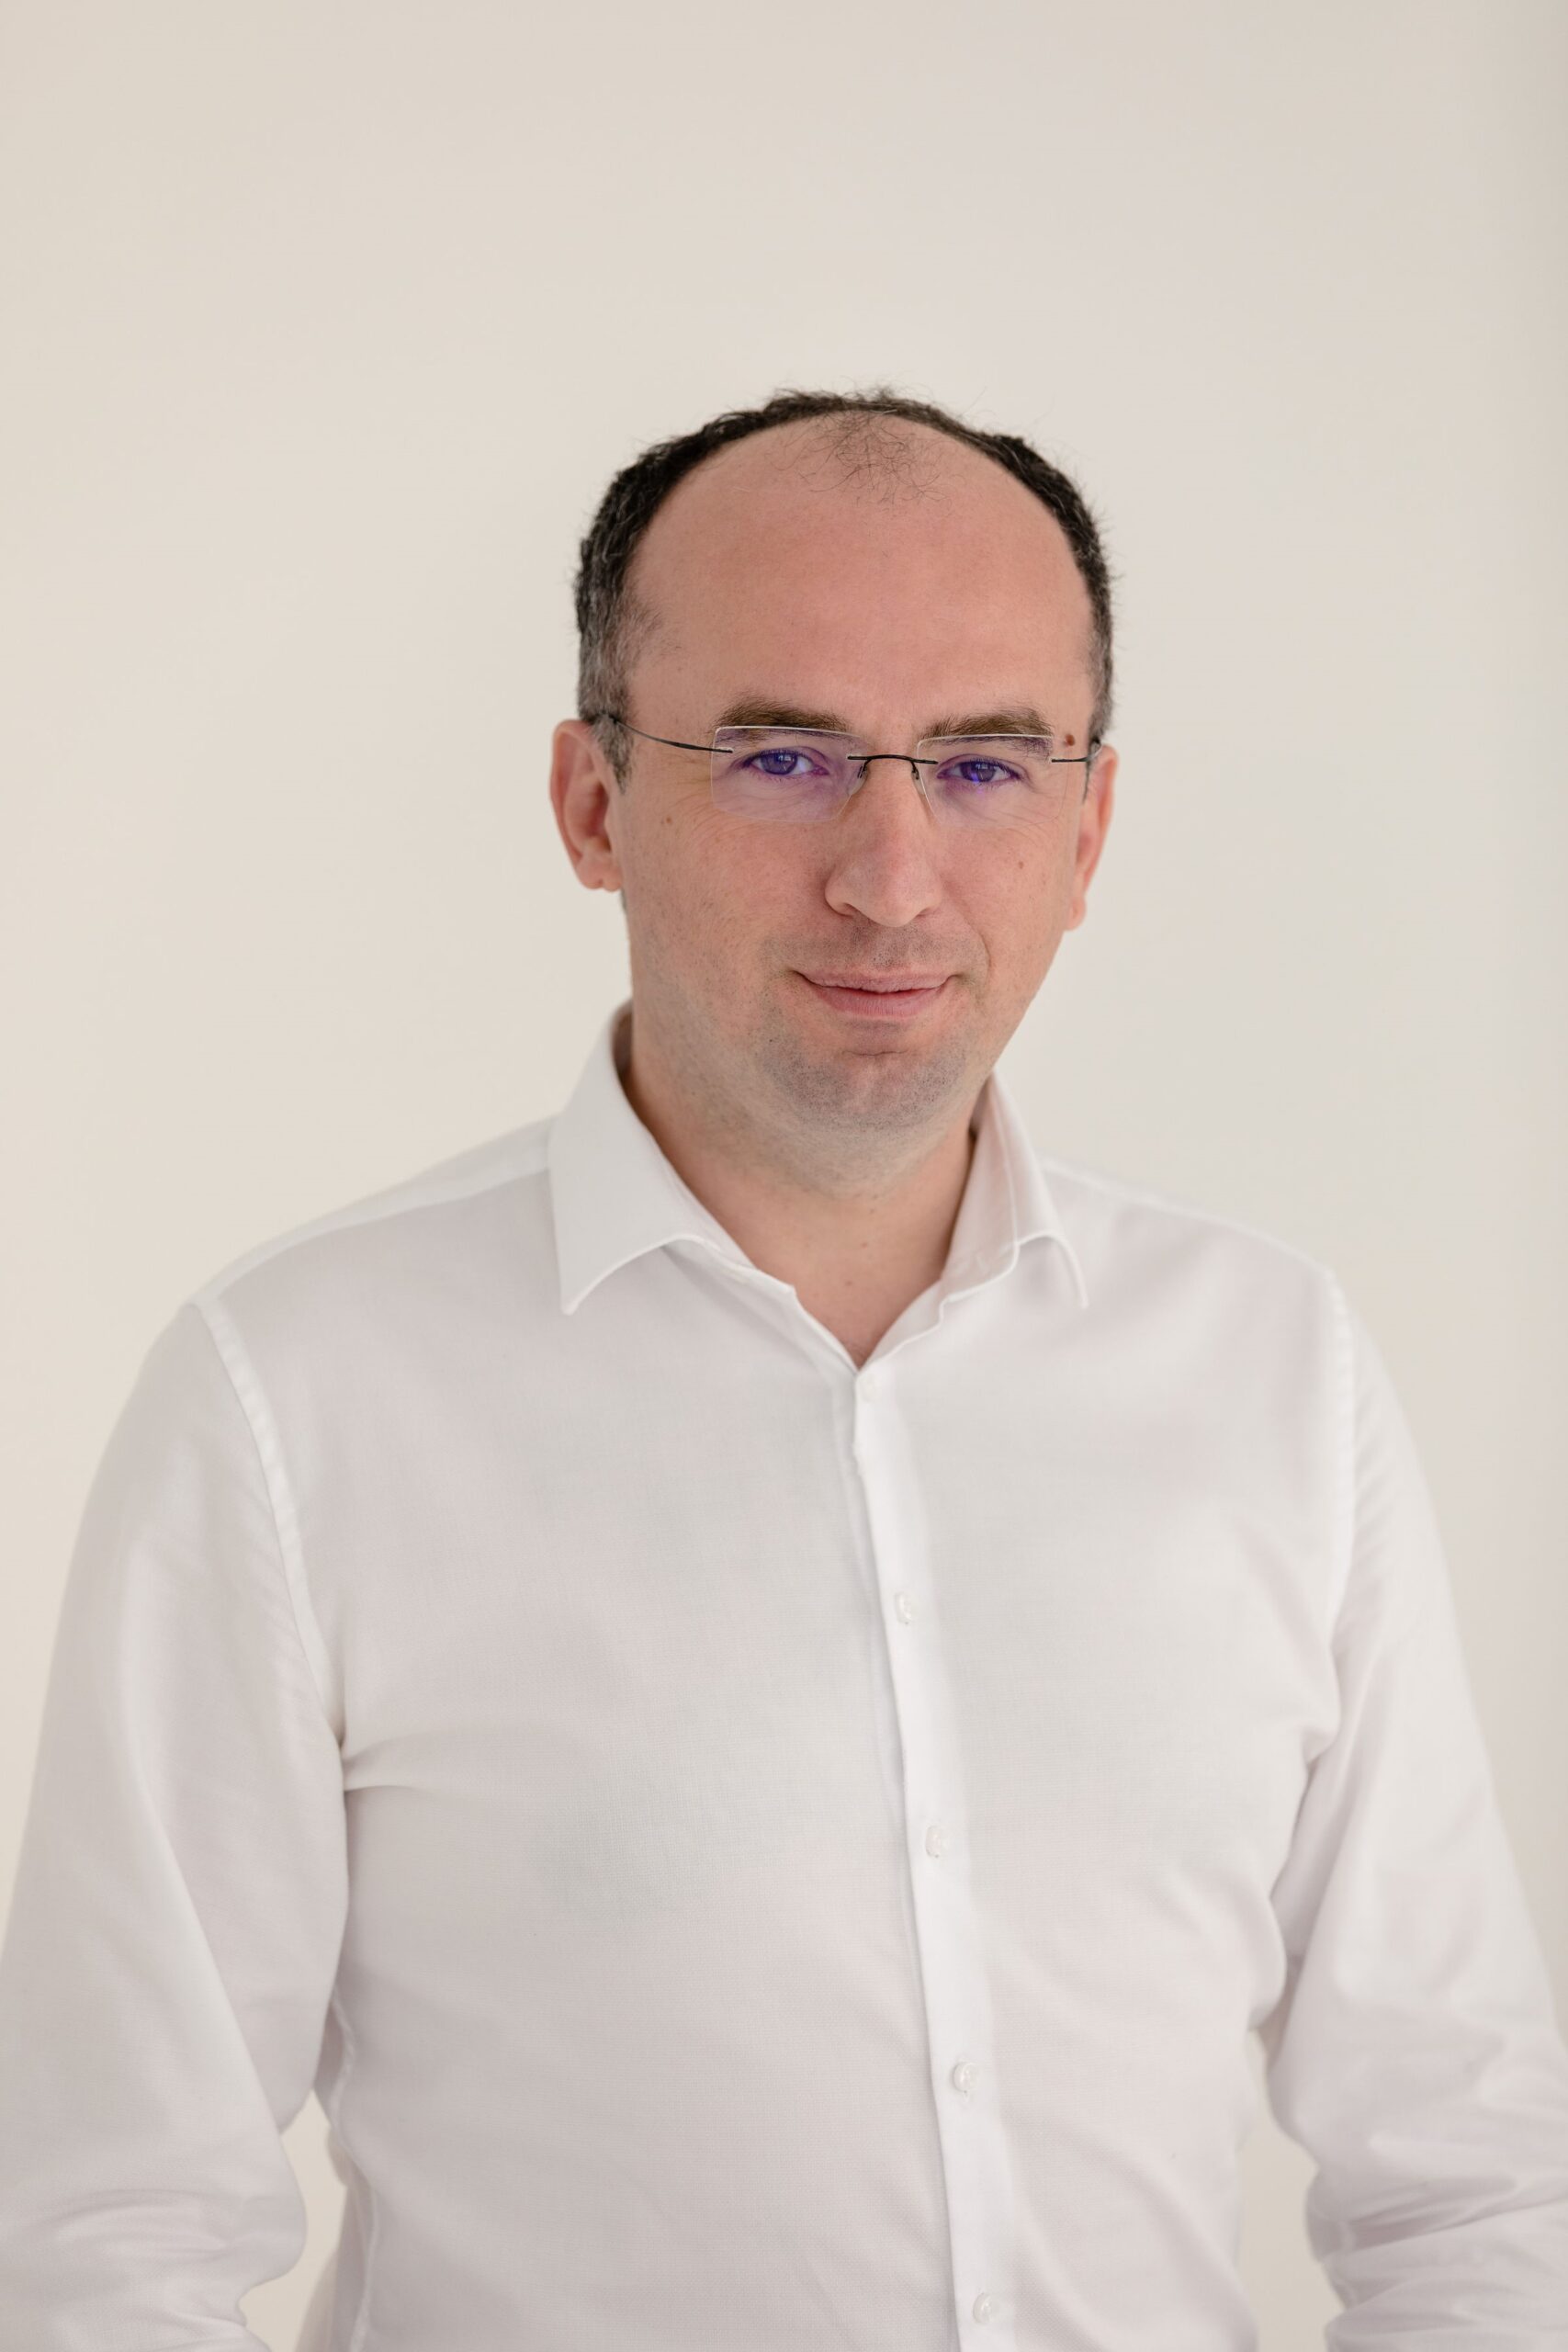 Marius Geantă - INOMED President and Scientific Lead (Senior expert) - Image